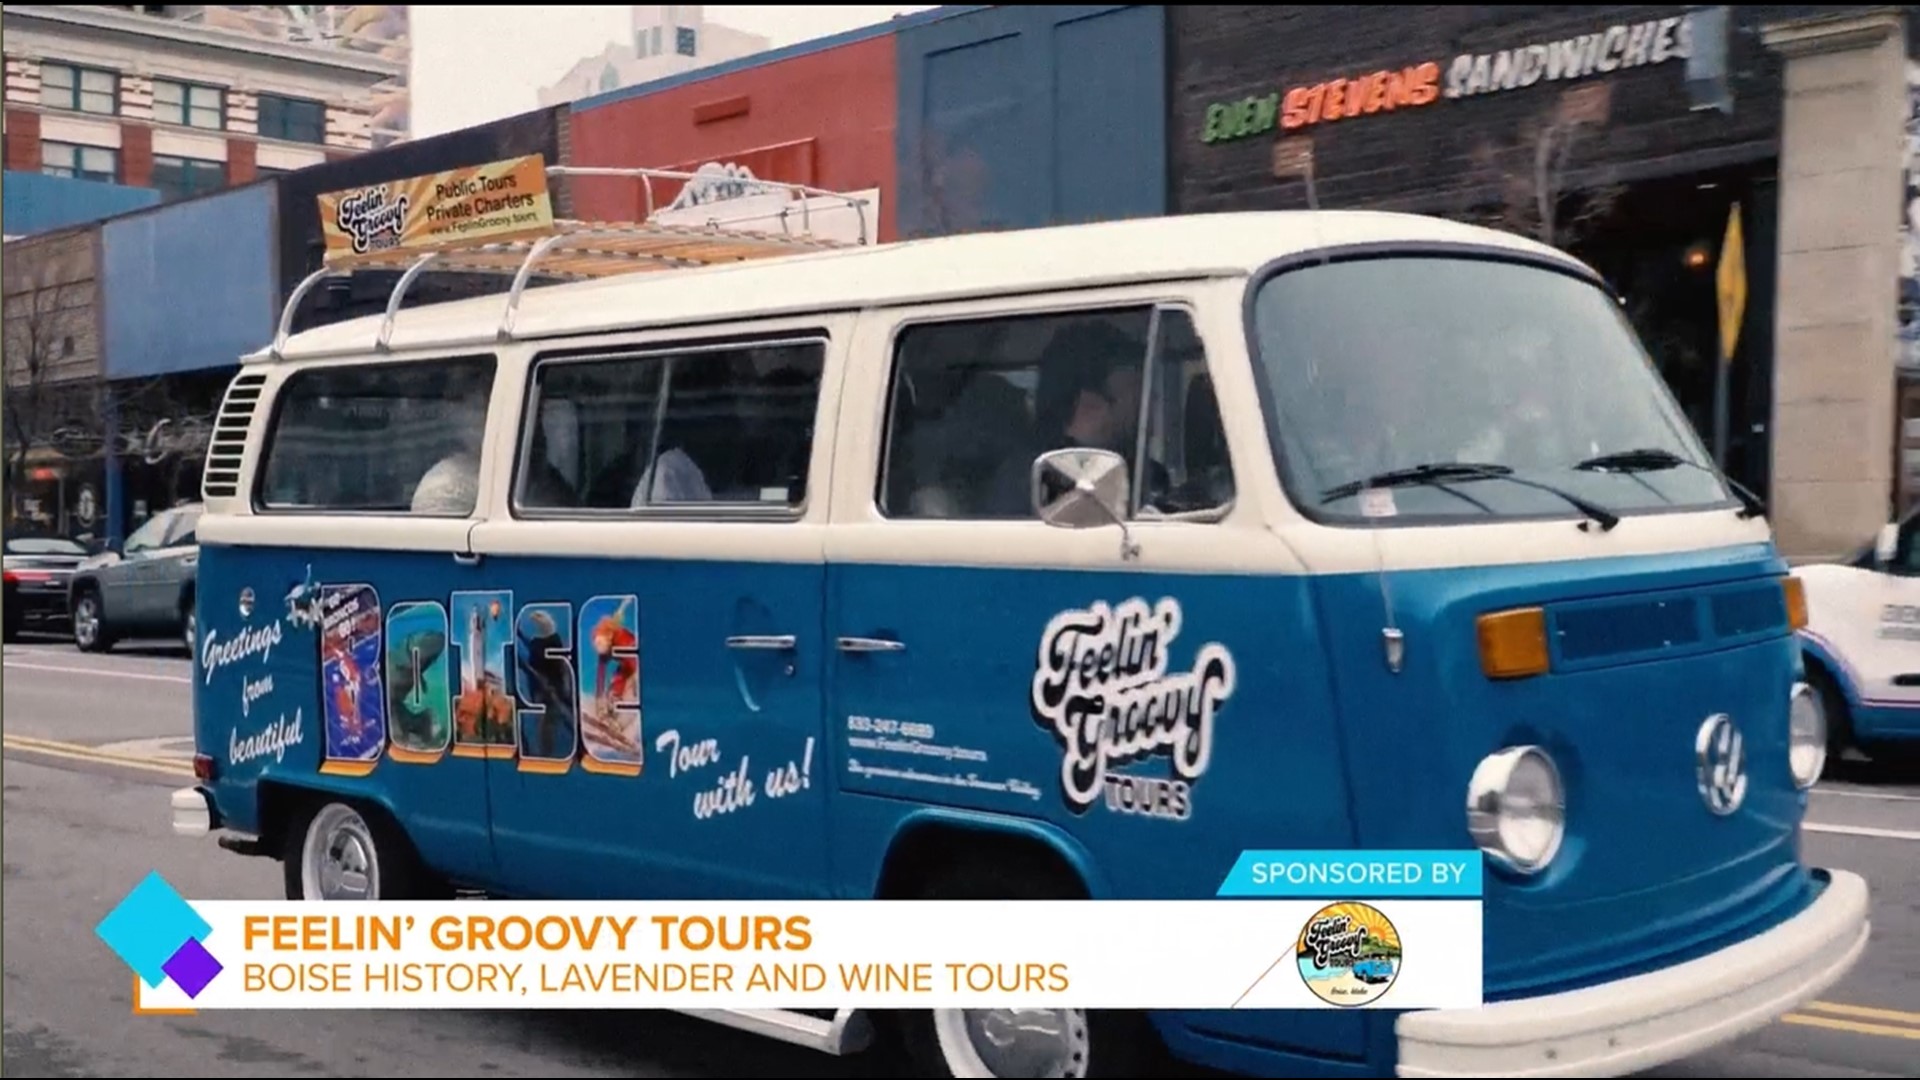 Sponsored by Feelin' Groovy Tours.